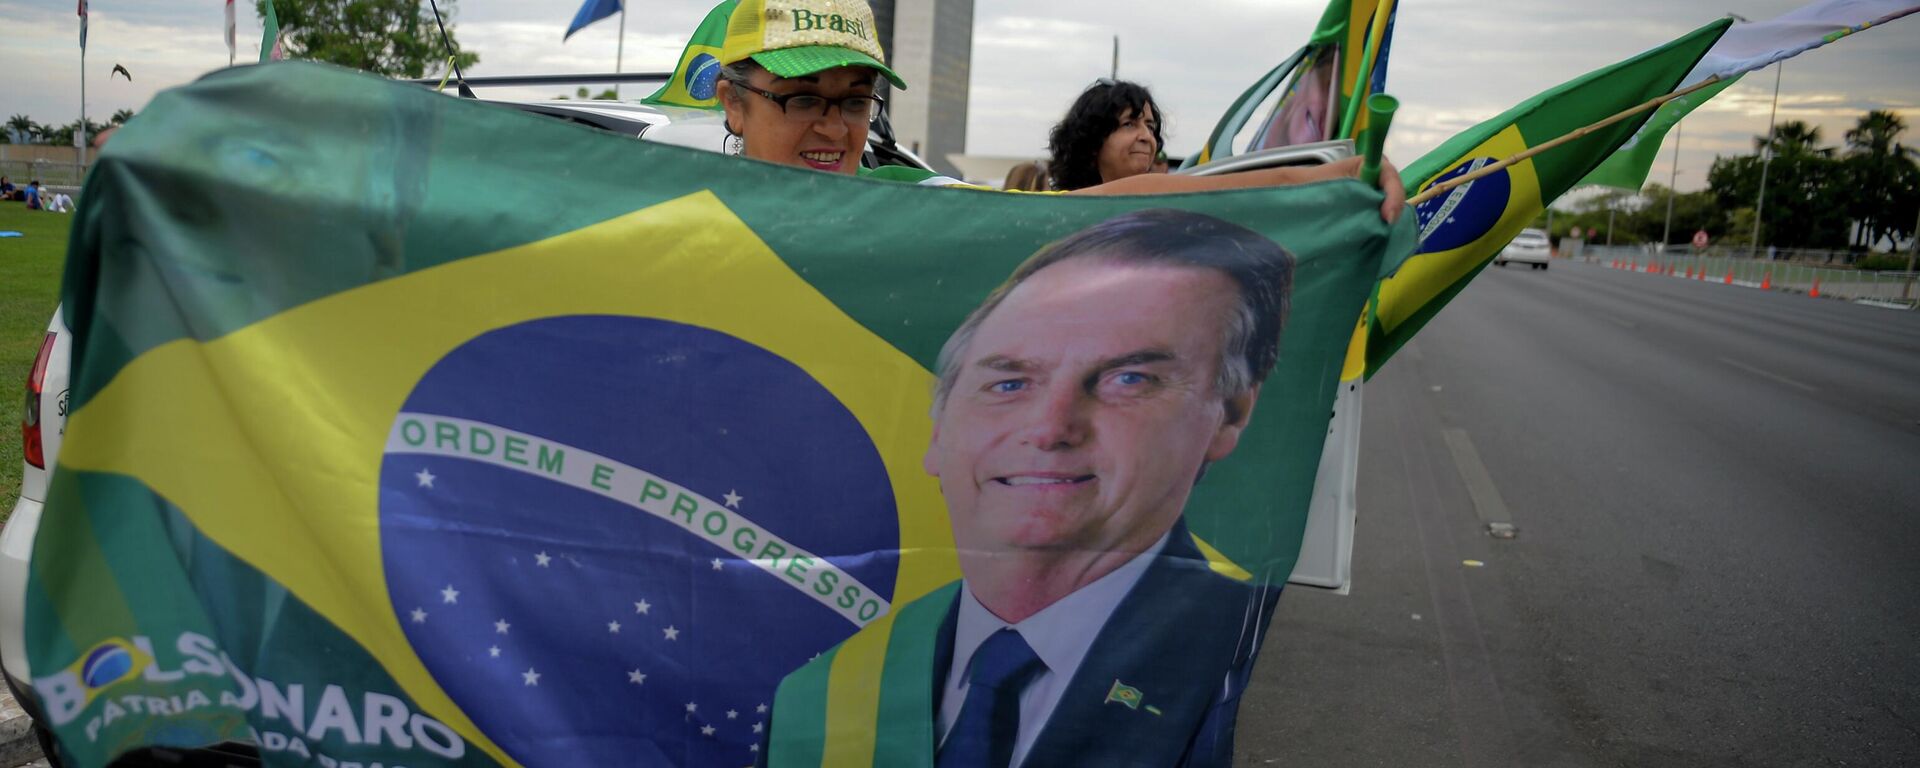 Una mujer sostiene una bandera con la imagen del presidente de Brasil, Jair Bolsonaro en las elecciones presidenciales - Sputnik Mundo, 1920, 03.10.2022